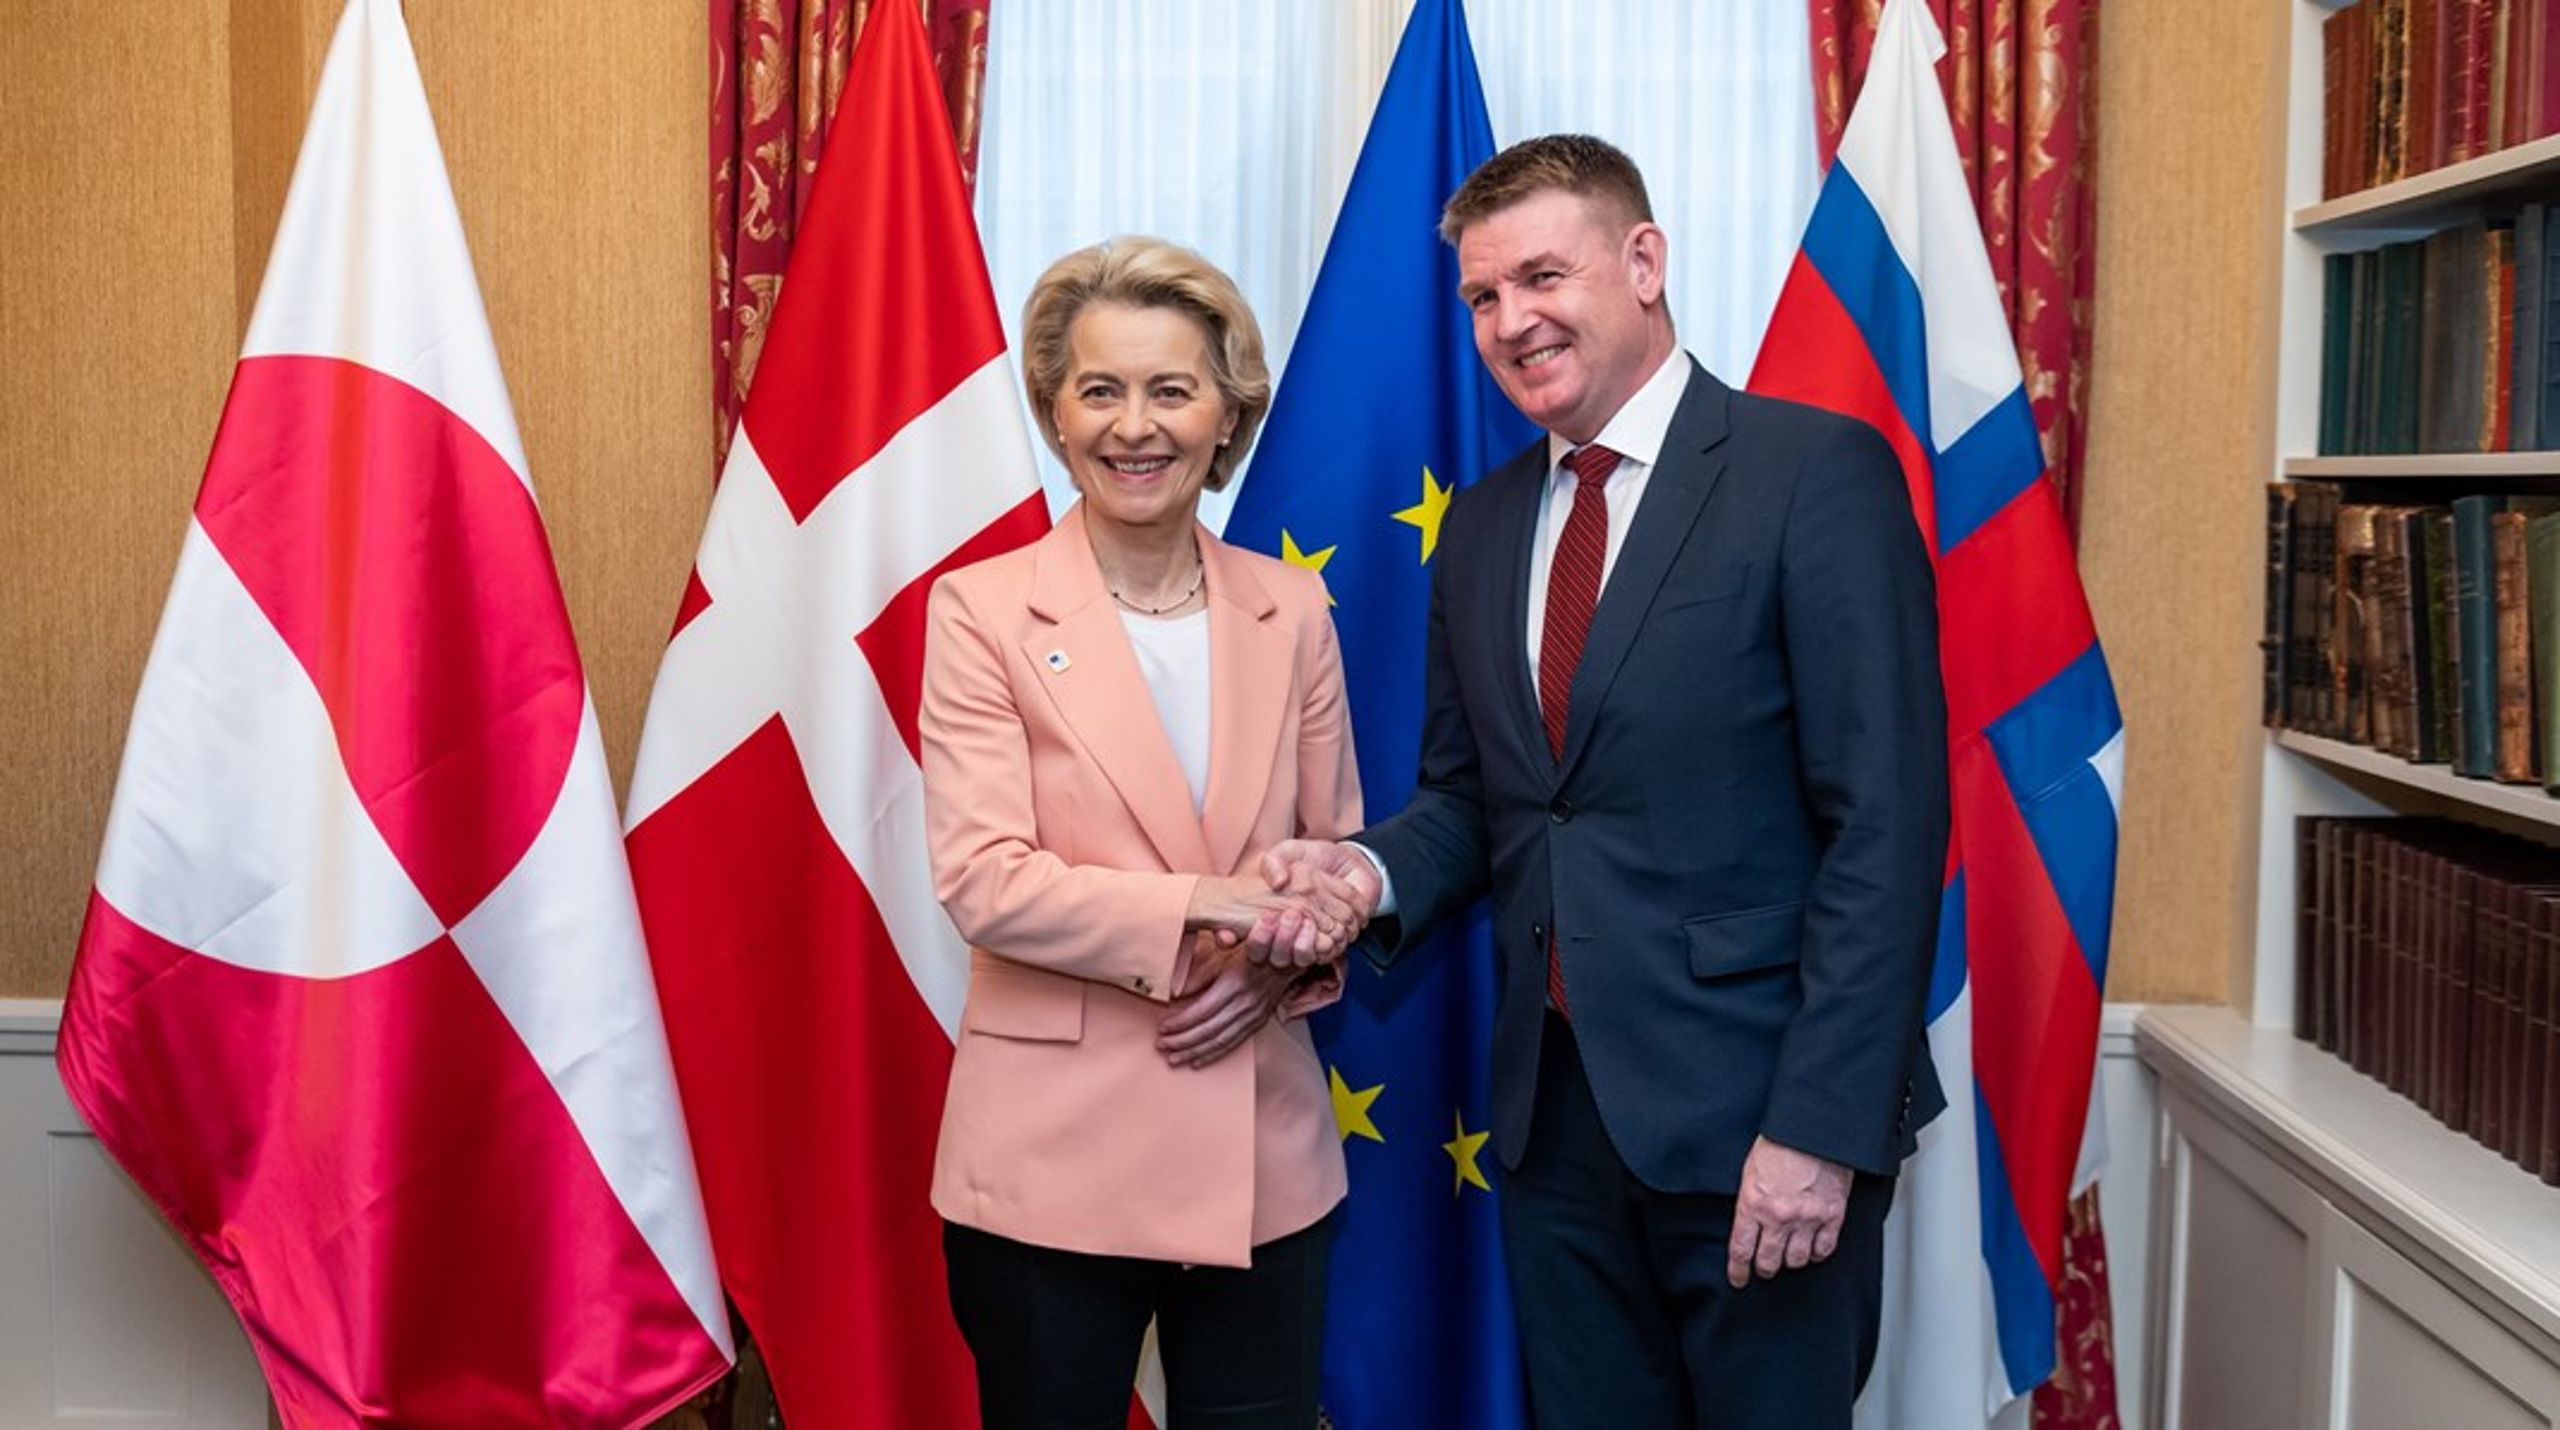 "Jeg fik sagt til Kommissionsformanden, at det har en stor betydning, at vi som ligesindede samarbejder mere i fremtiden. Det budskab modtog hun positivt," siger Færøernes lagmand, Aksel V. Johannesen, om sit første møde med Ursula von der Leyen.